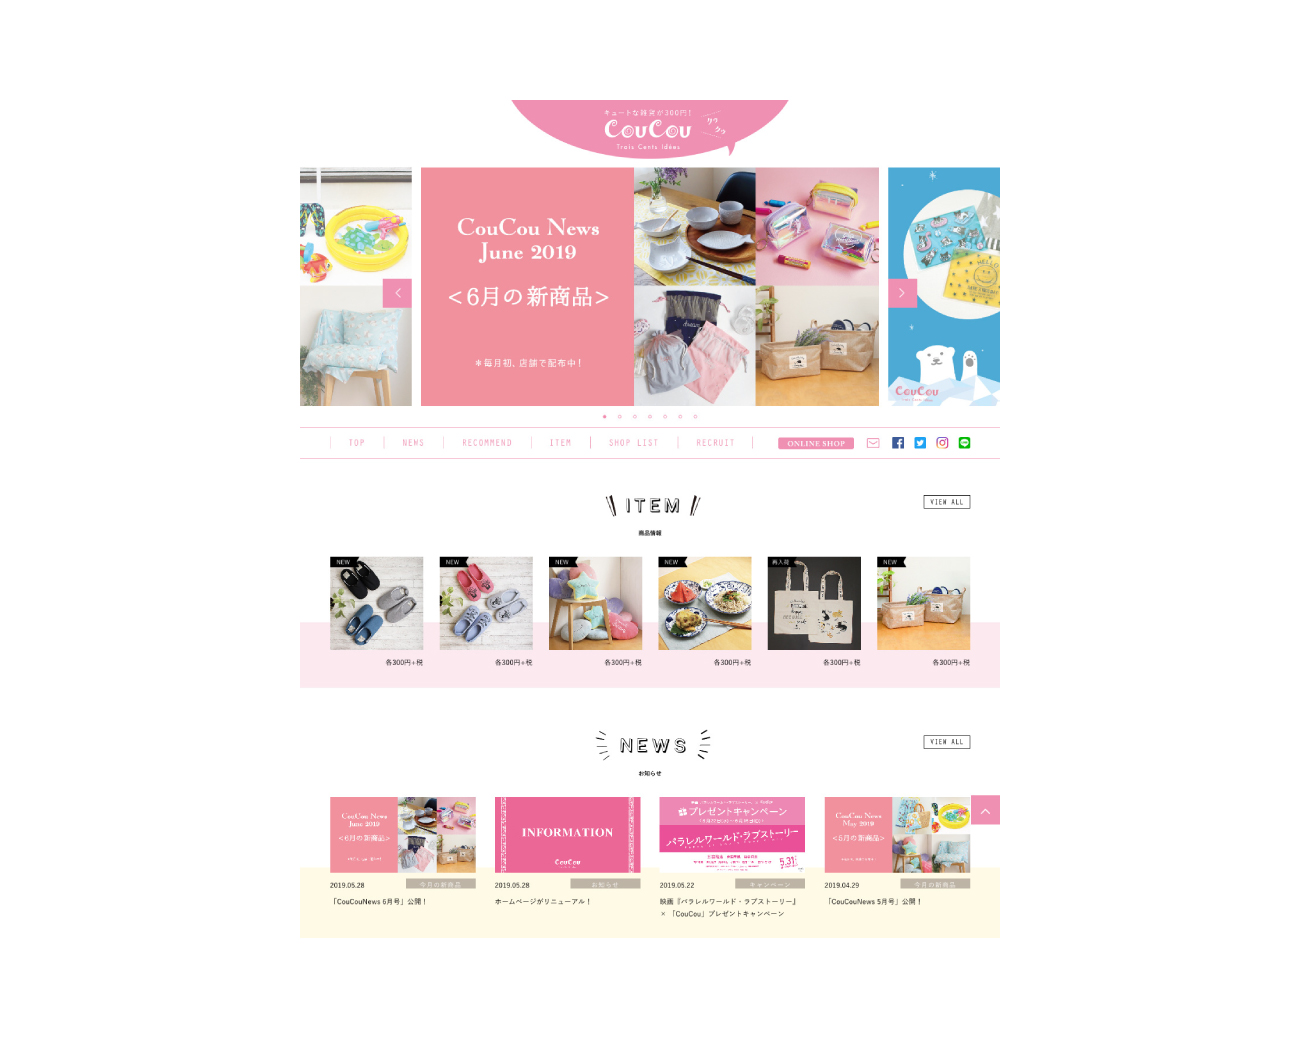 300円ショップ Coucou Webサイト 女性デザイナーによる女性向けデザイン ホームページ制作 カタログデザインのマキア